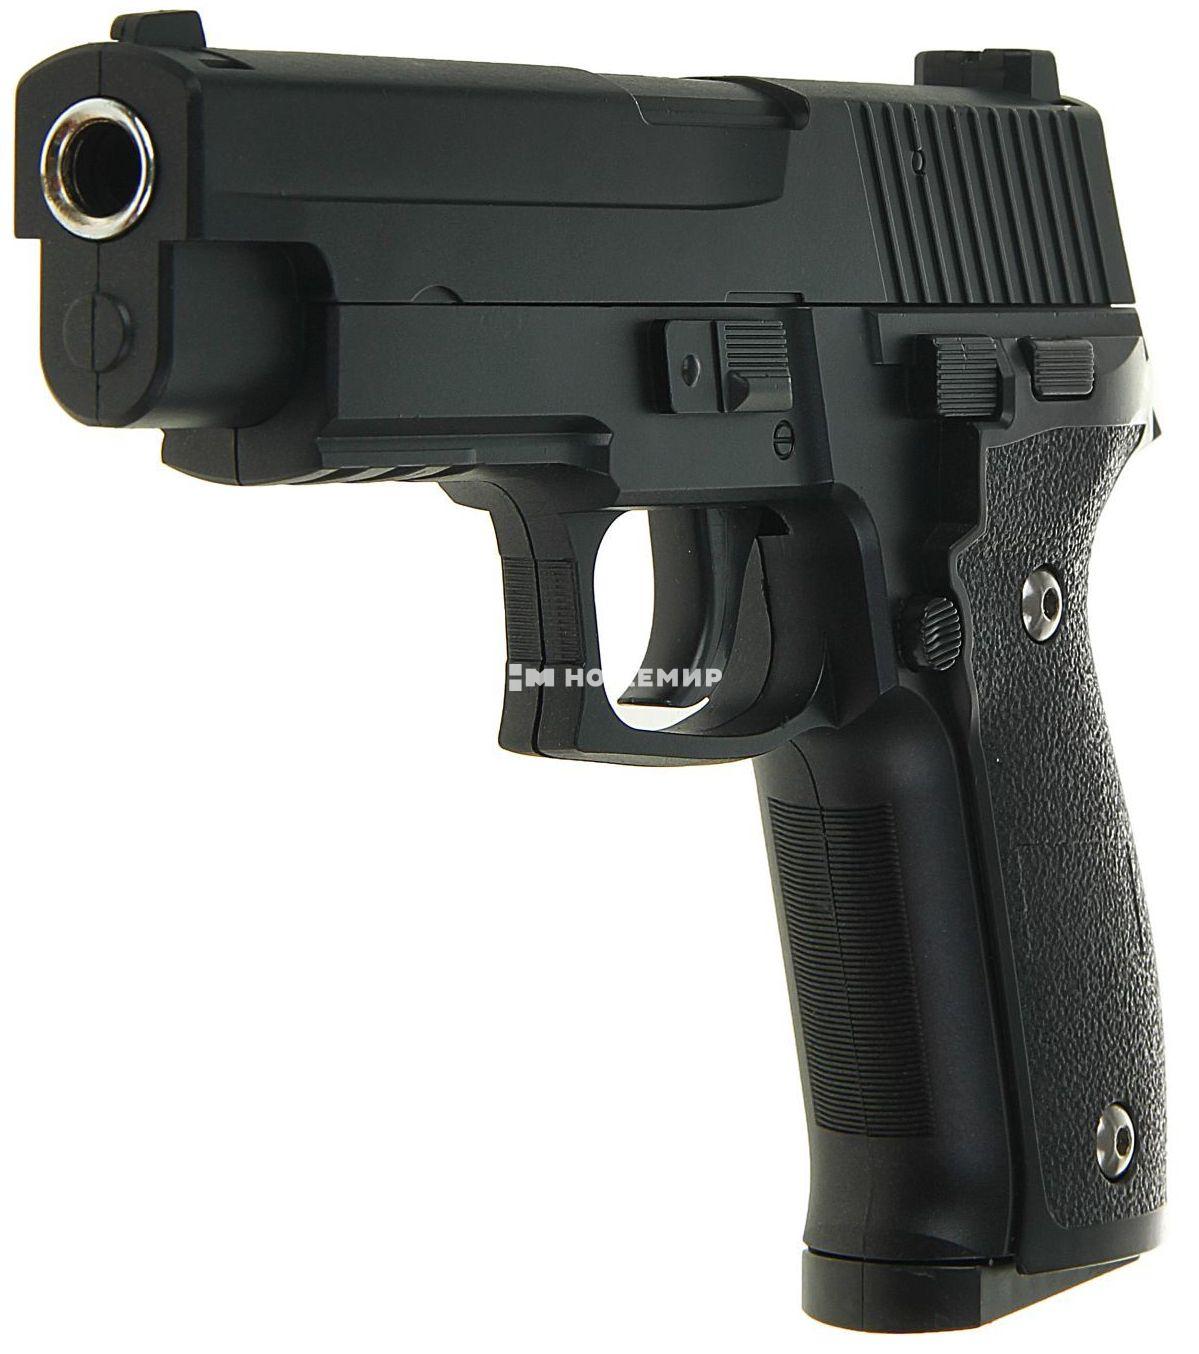 Страйкбольный пистолет пружинный SIG Sauer P226 Galaxy G26